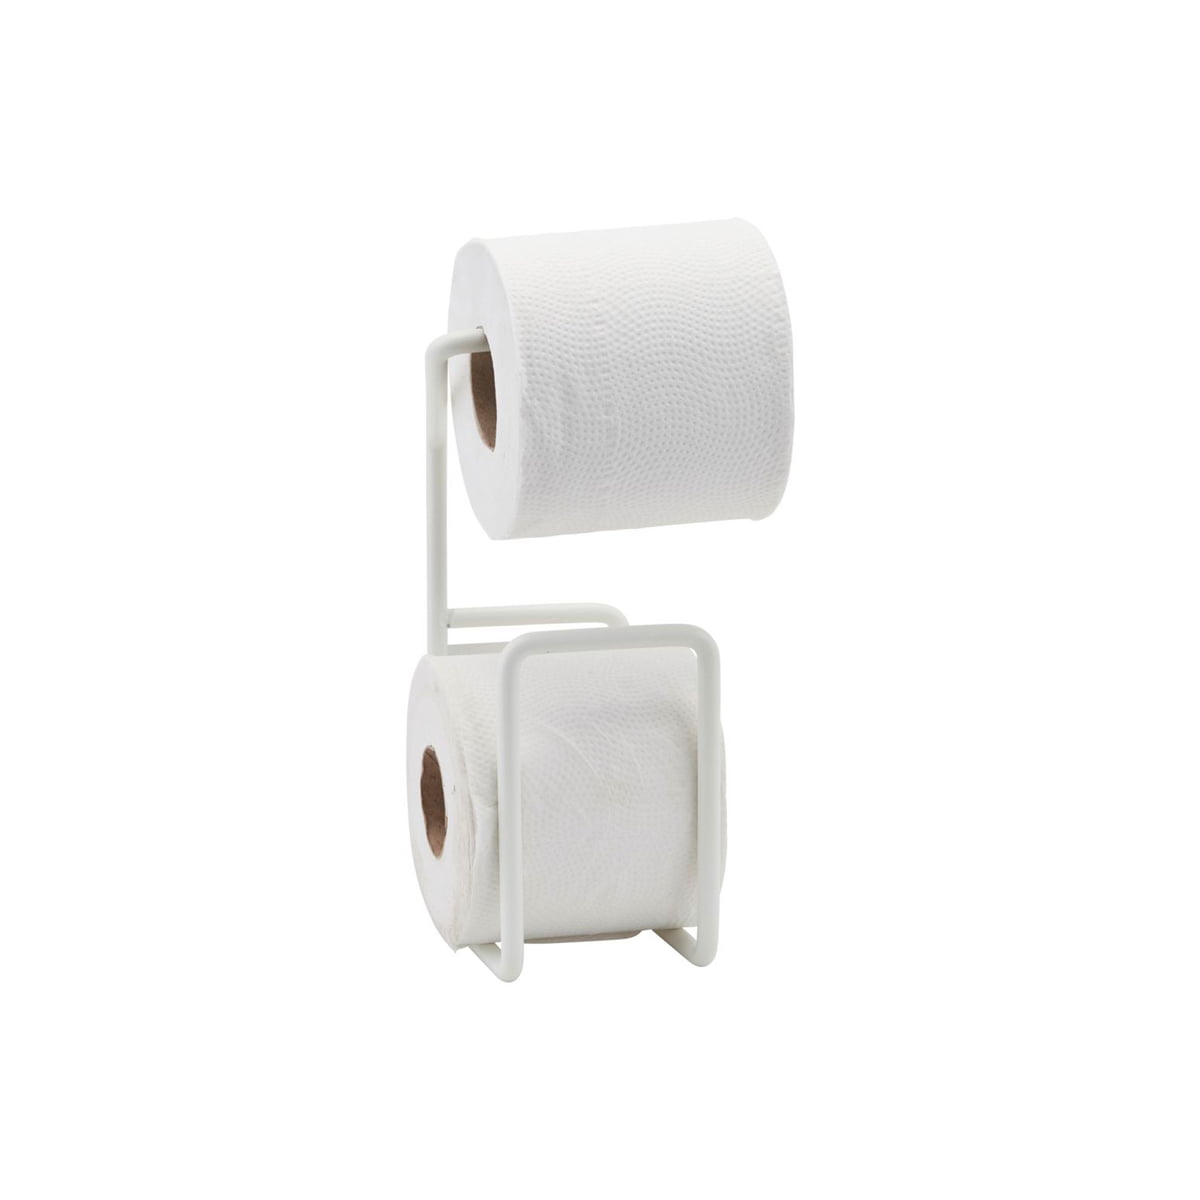 Authentics - Kali Porte-rouleau de papier toilette